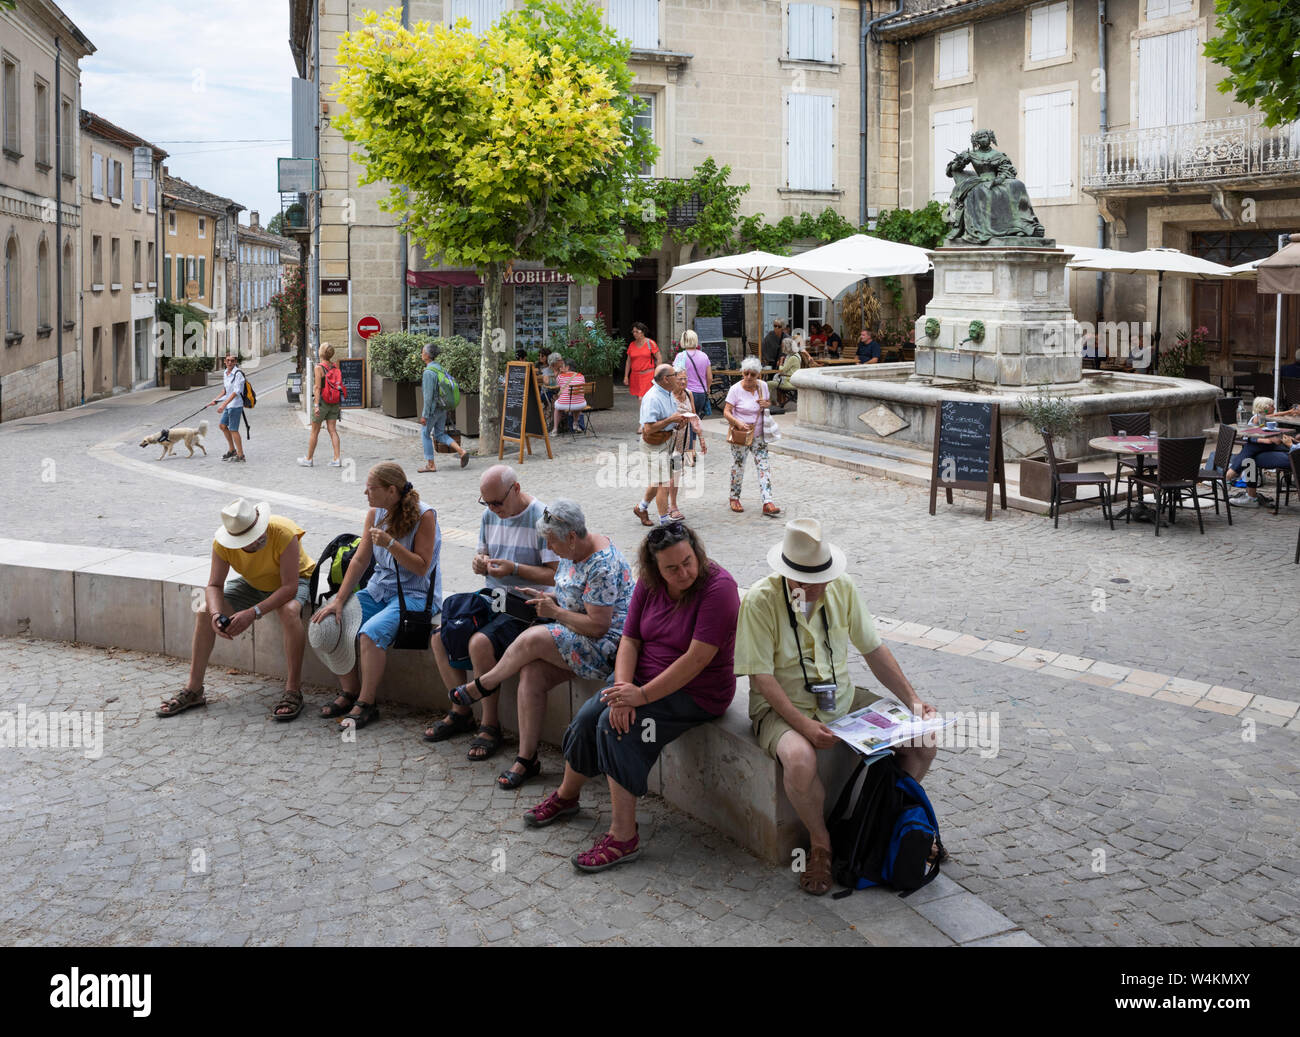 Los turistas descansando en el lugar Sévigné, Grignan, departamento de Drome, Auvergne-Rhone-Alpes Provence, Francia, Europa Foto de stock